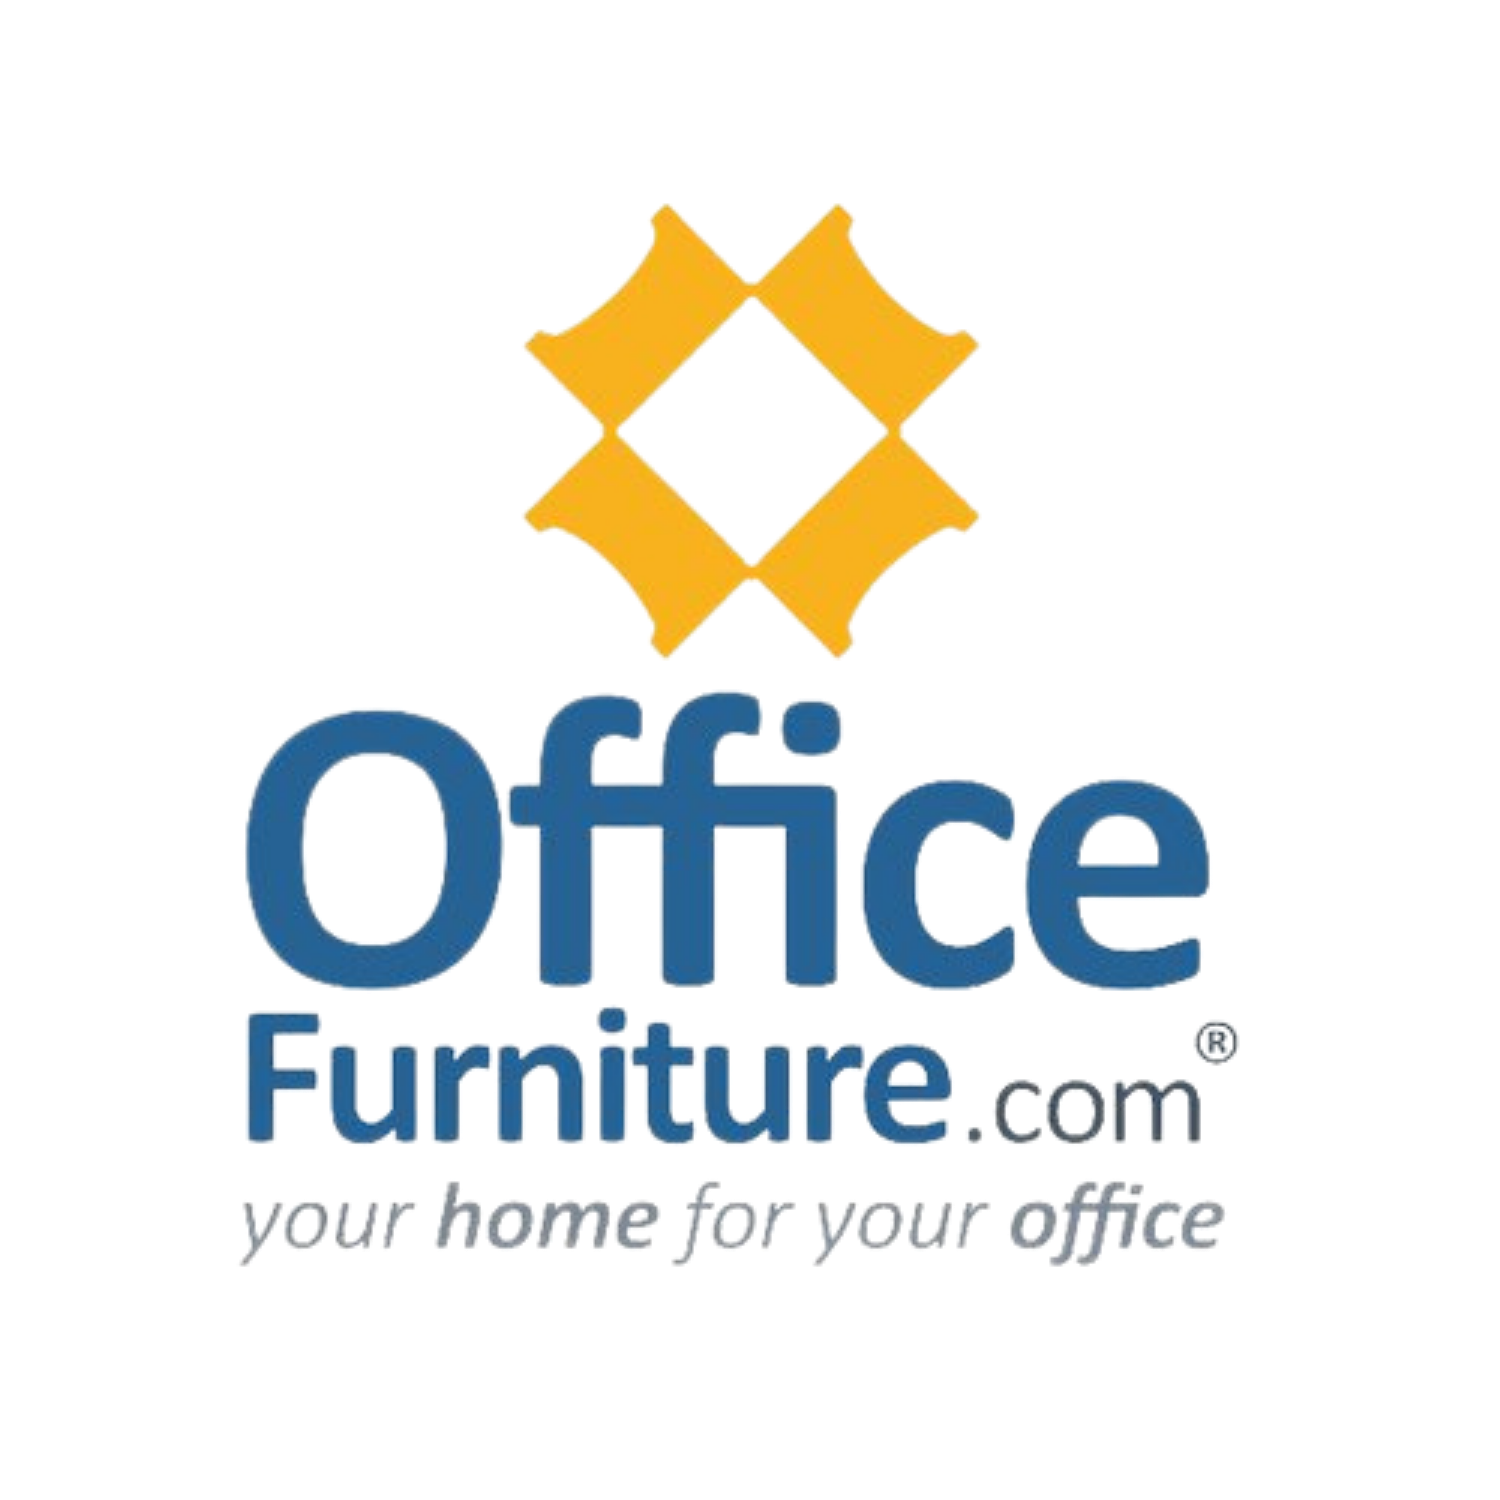 OfficeFurniture.com logo website 1